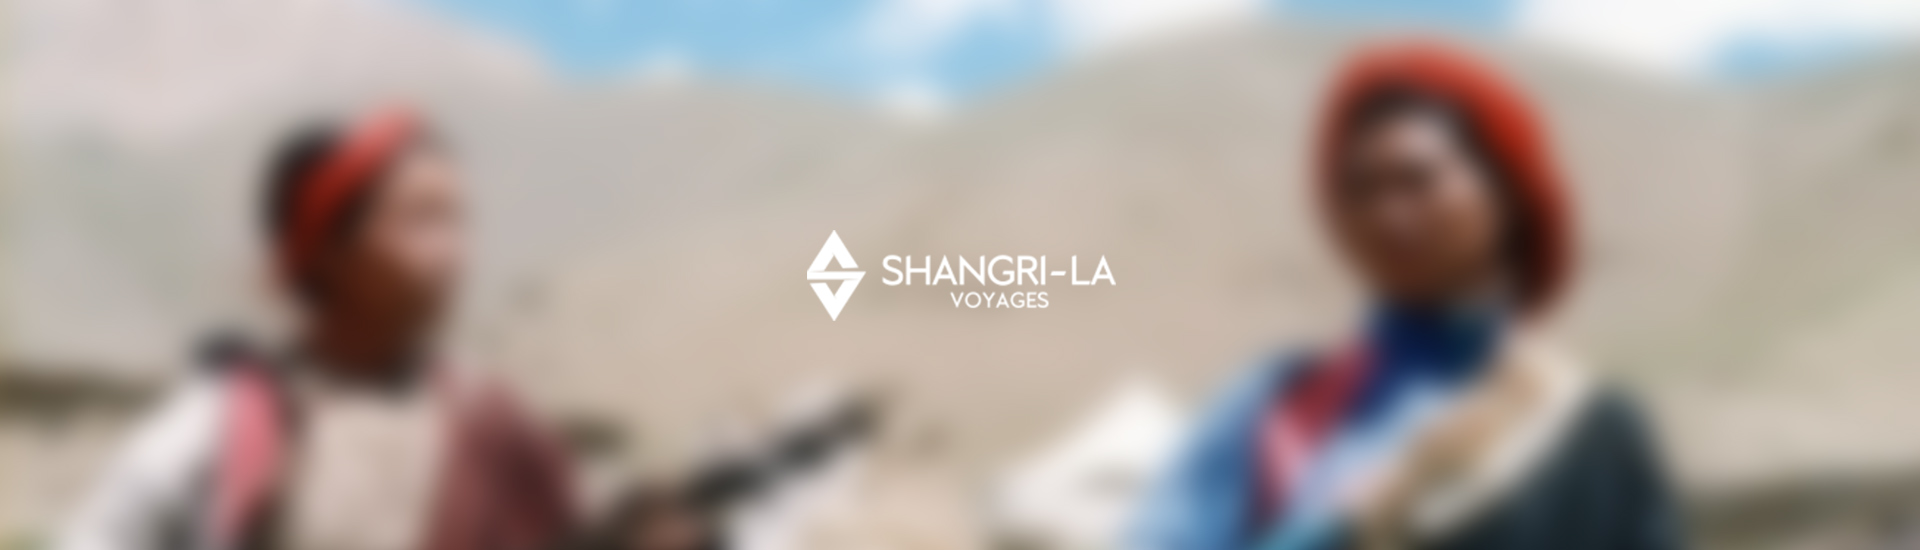 Shangri-la Voyages Pvt. Ltd.